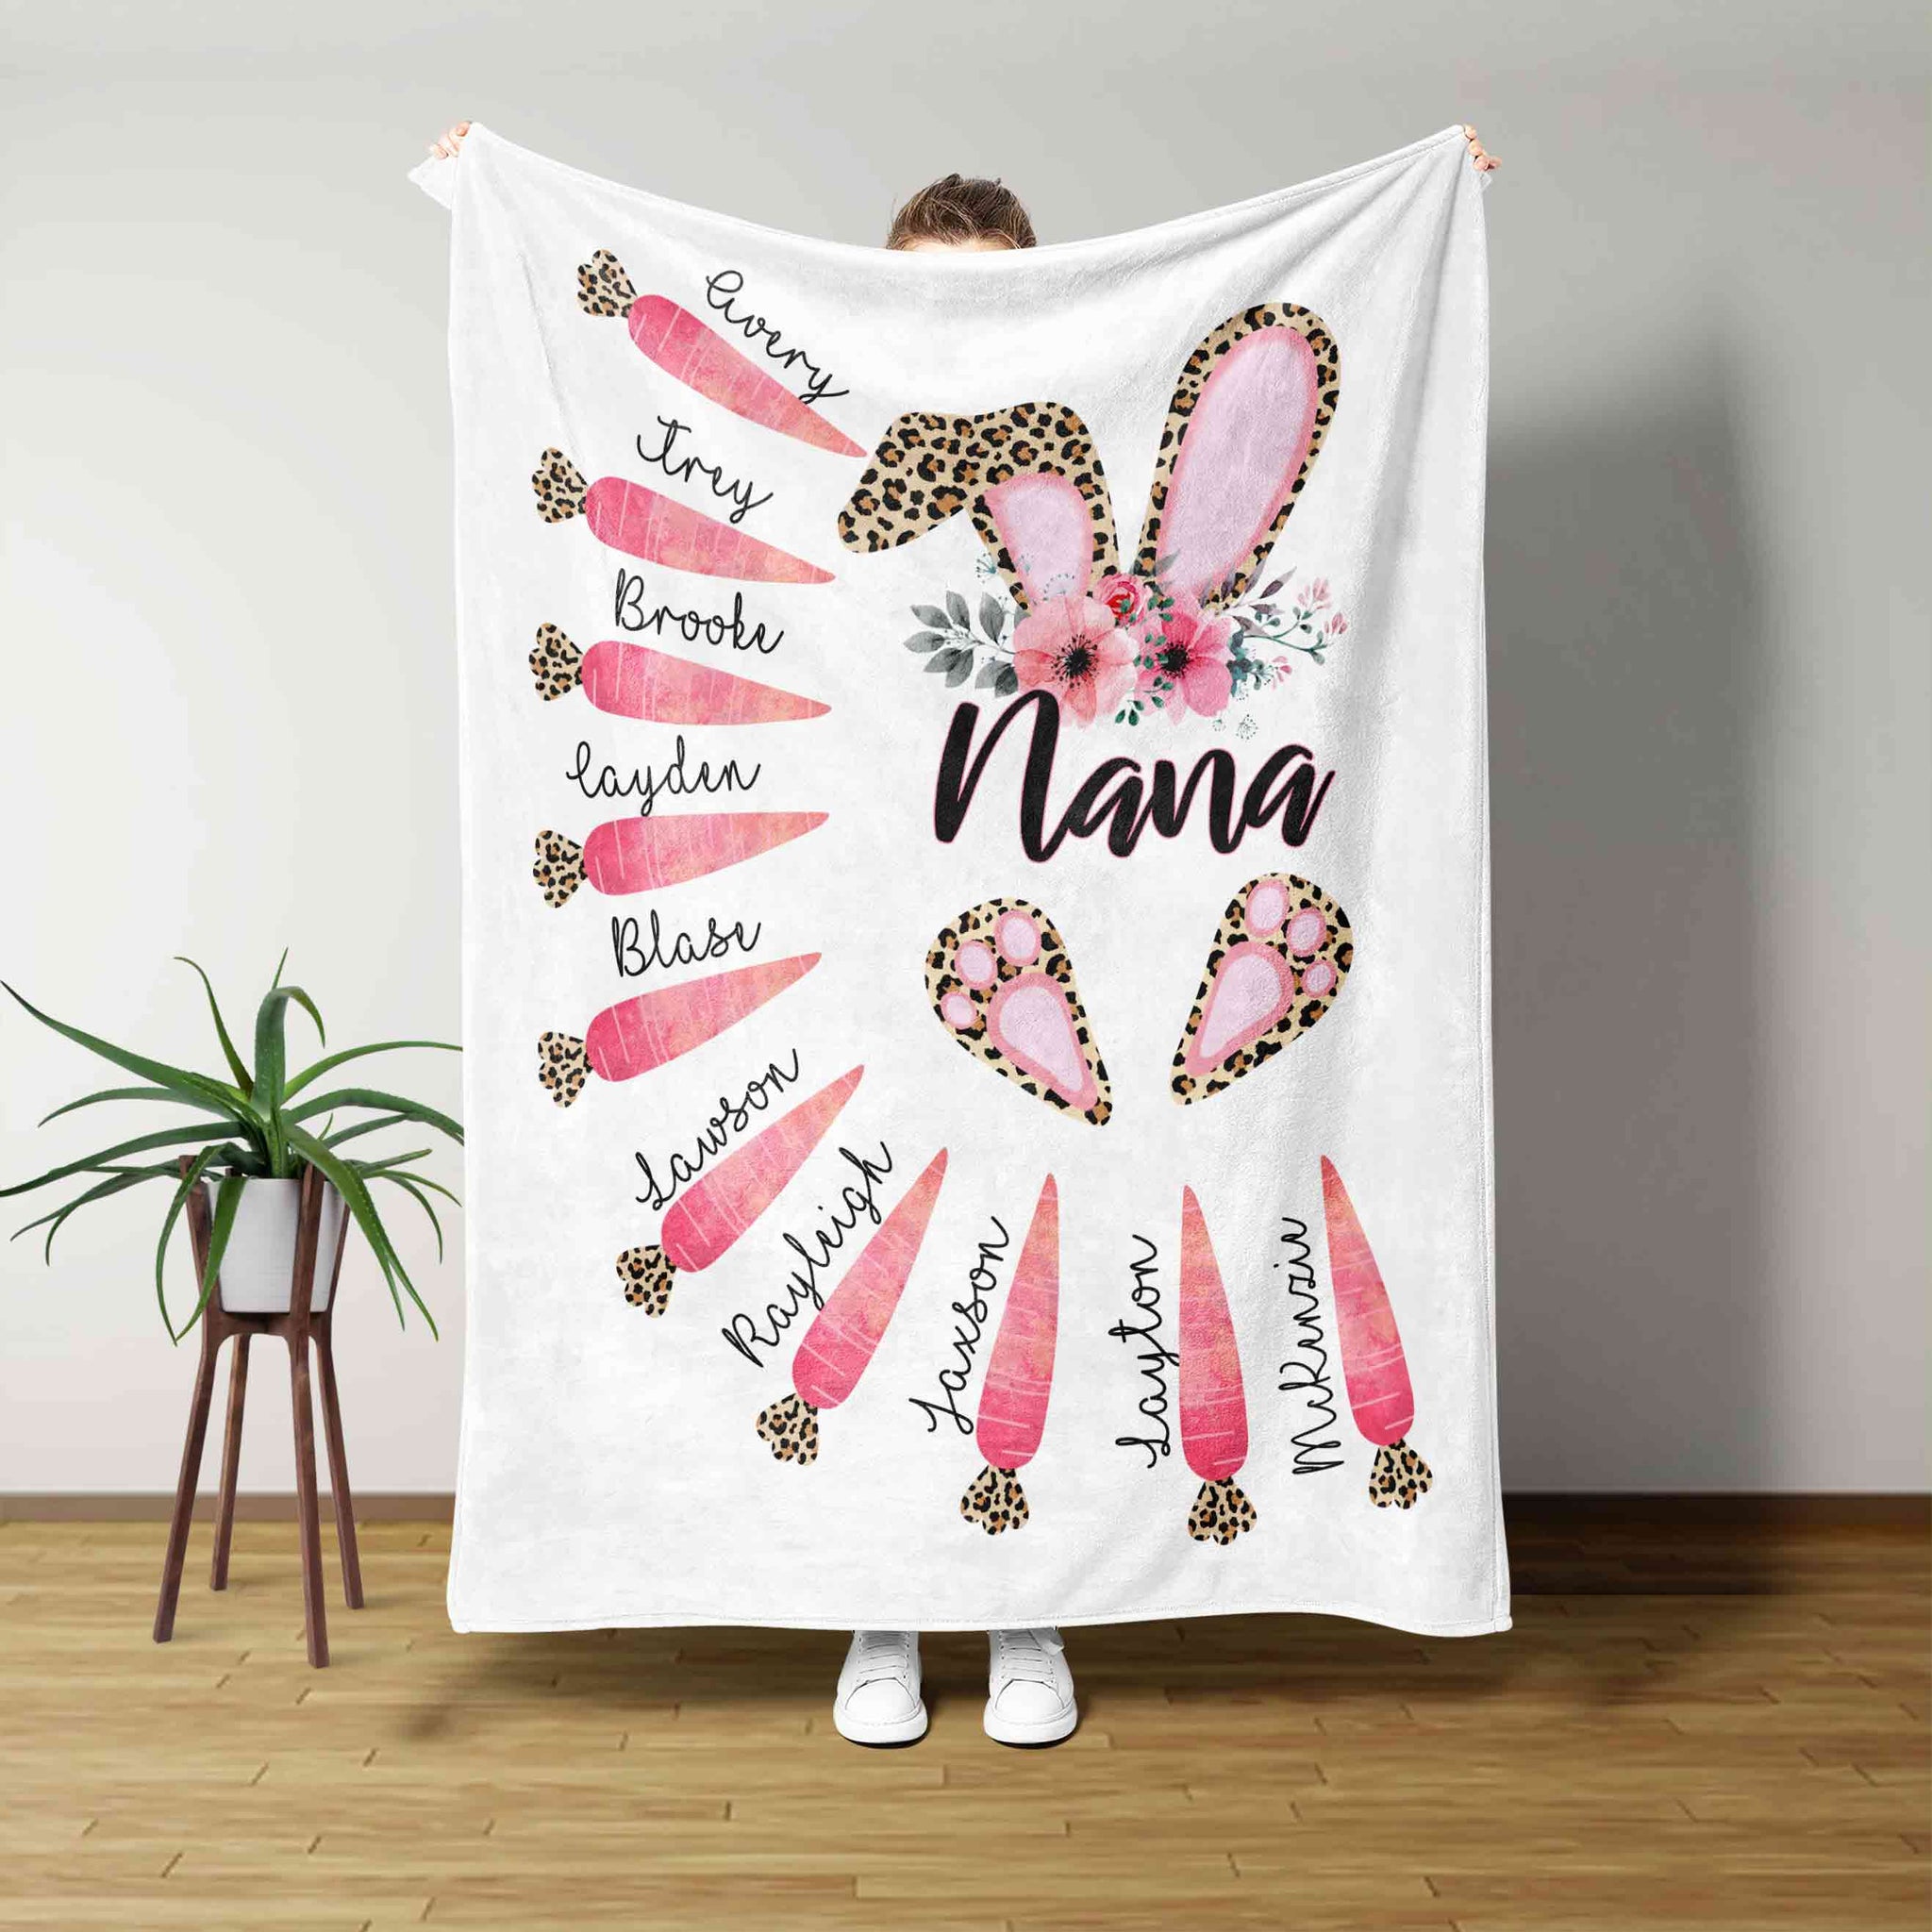 Nana Blanket, Rabbit Blanket, Flower Blanket, Carrot Blanket, Family Blanket, Custom Name Blanket, Gift Blanket